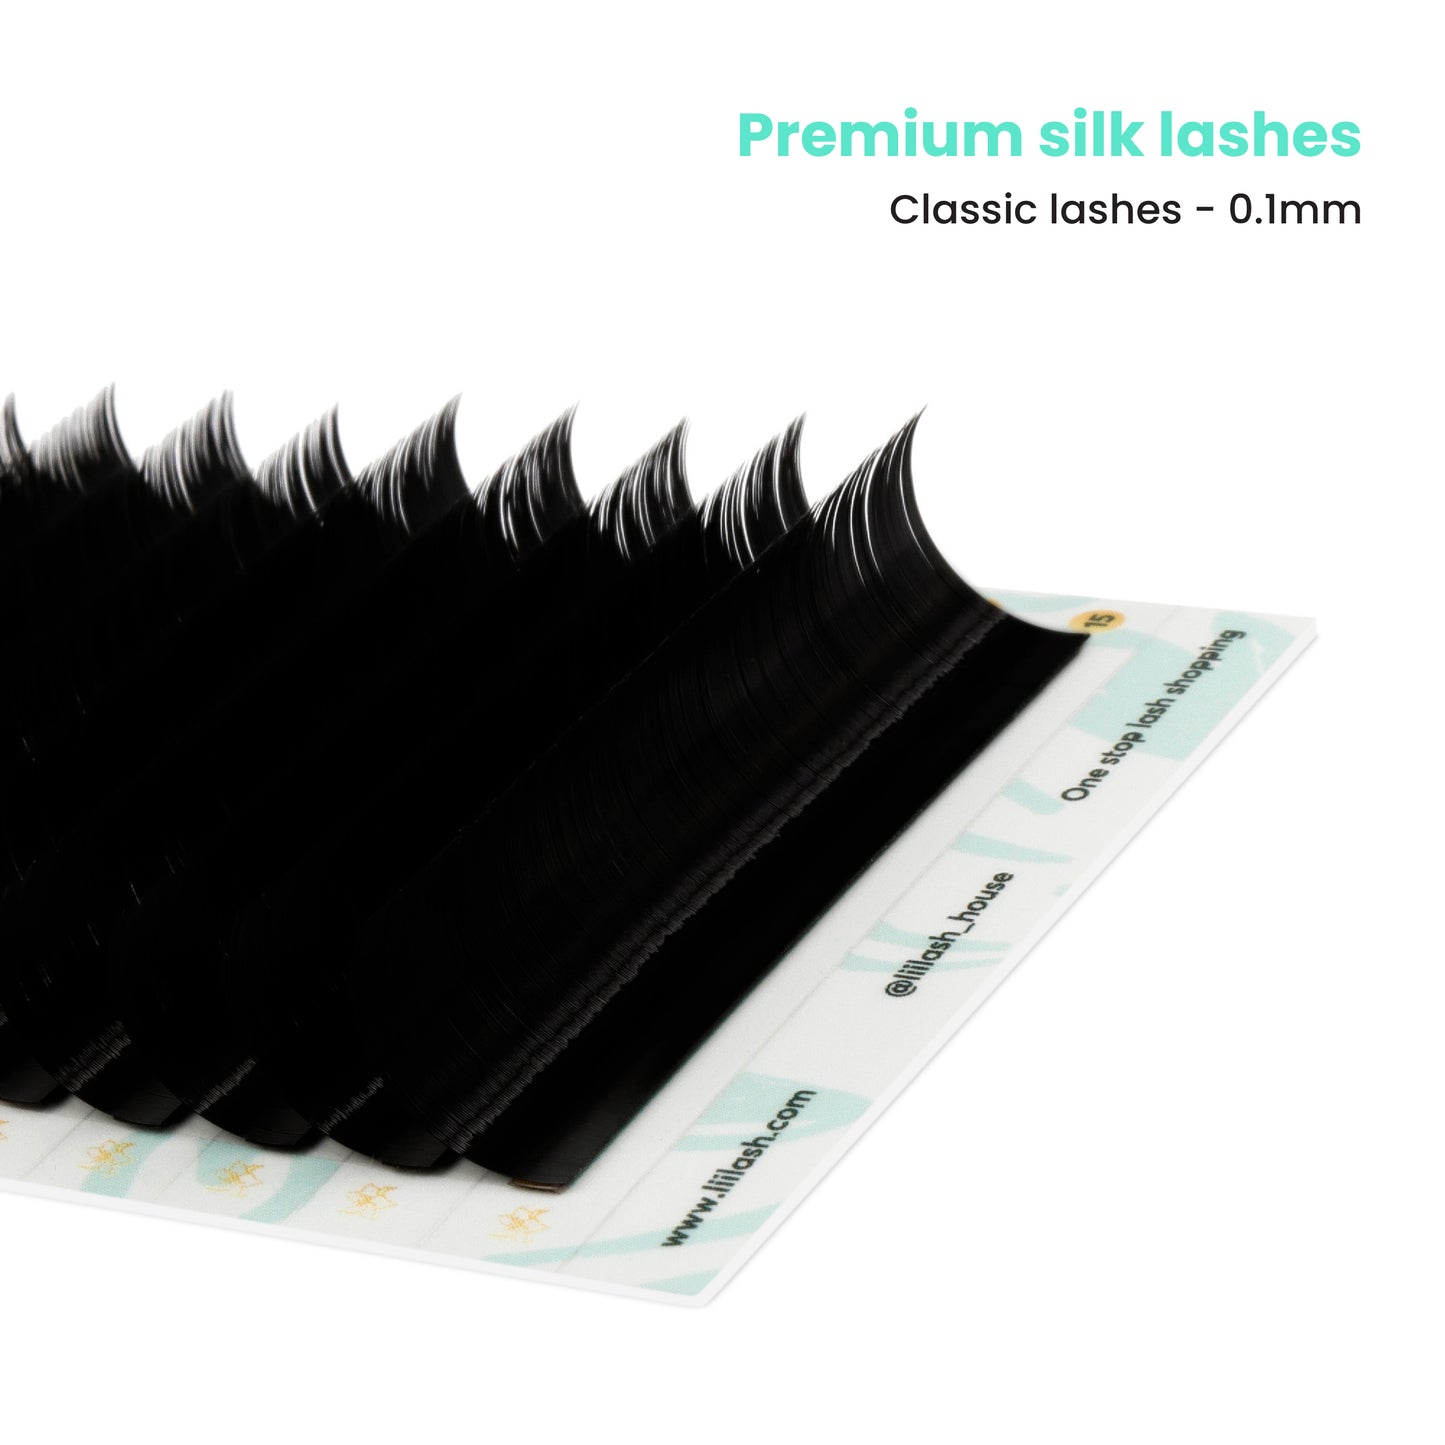 Premium Mink classic lashes 0.1mm